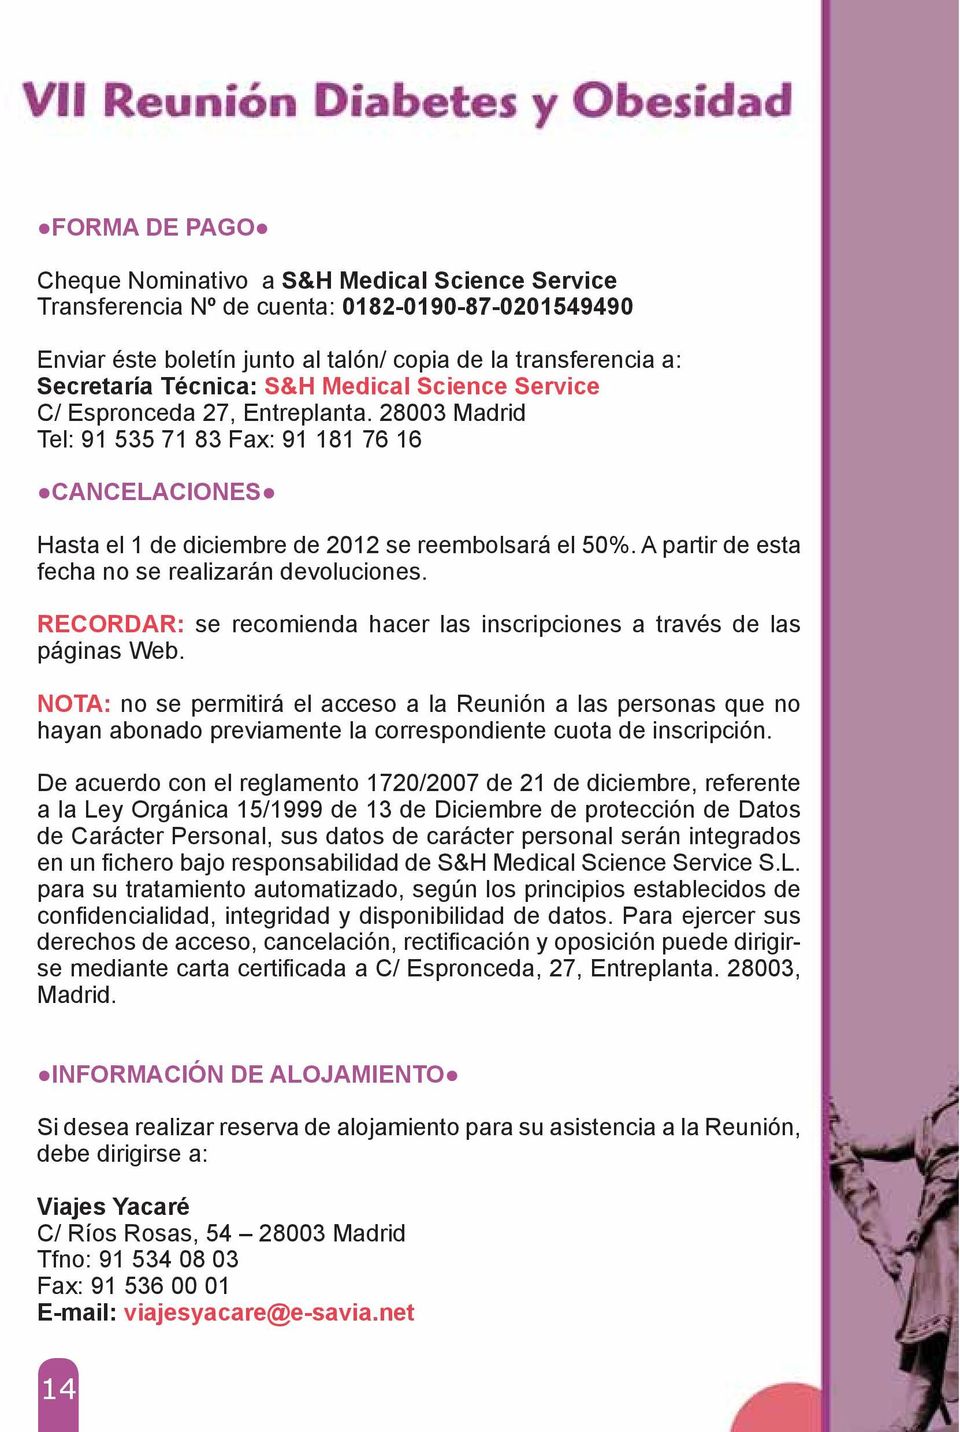 Science Service C/ Espronceda 27, Entreplanta. 28003 Madrid Tel: 91 535 71 83 Fax: 91 181 76 16!CANCELACIONES! Hasta el 1 de diciembre de 2012 se reembolsará el 50%.